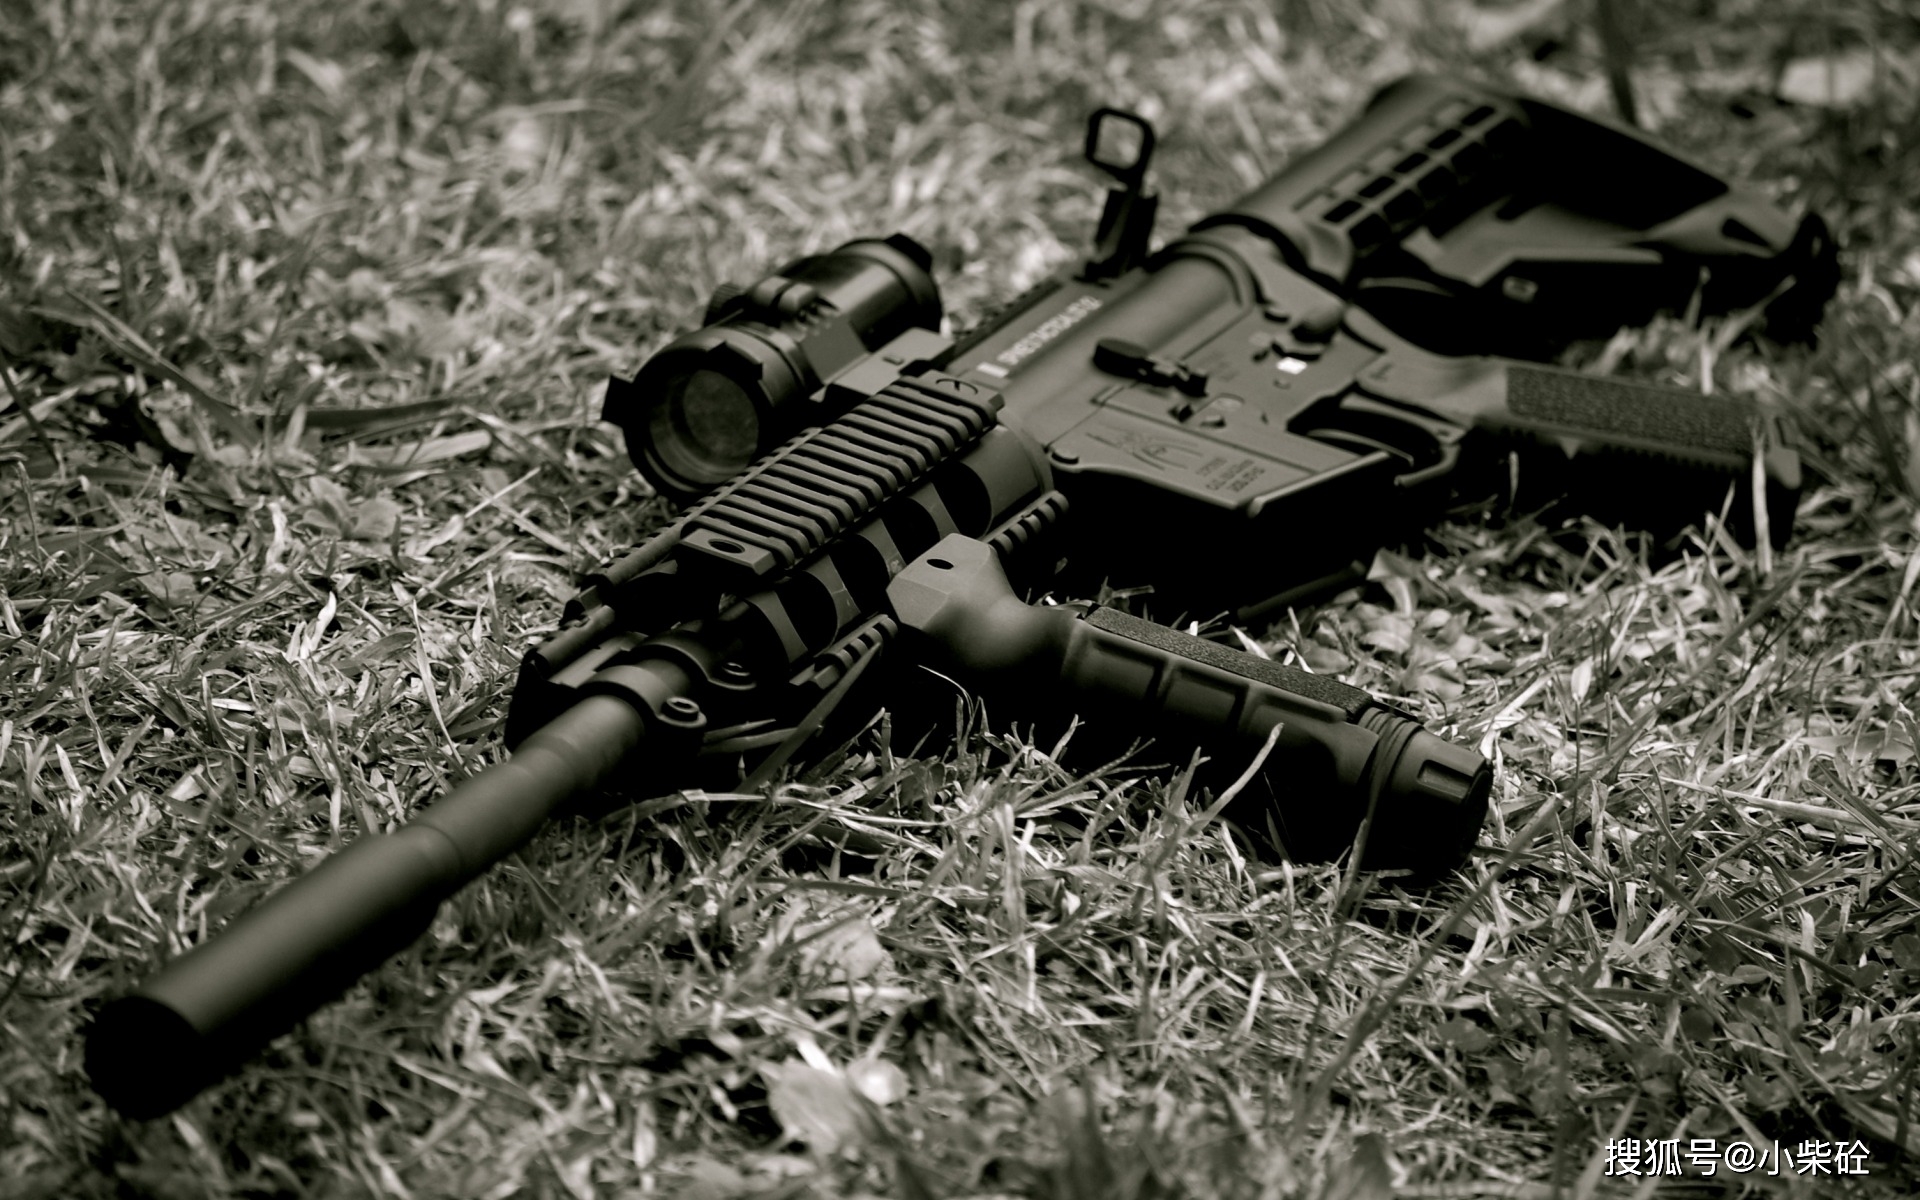 M4生存步枪图片